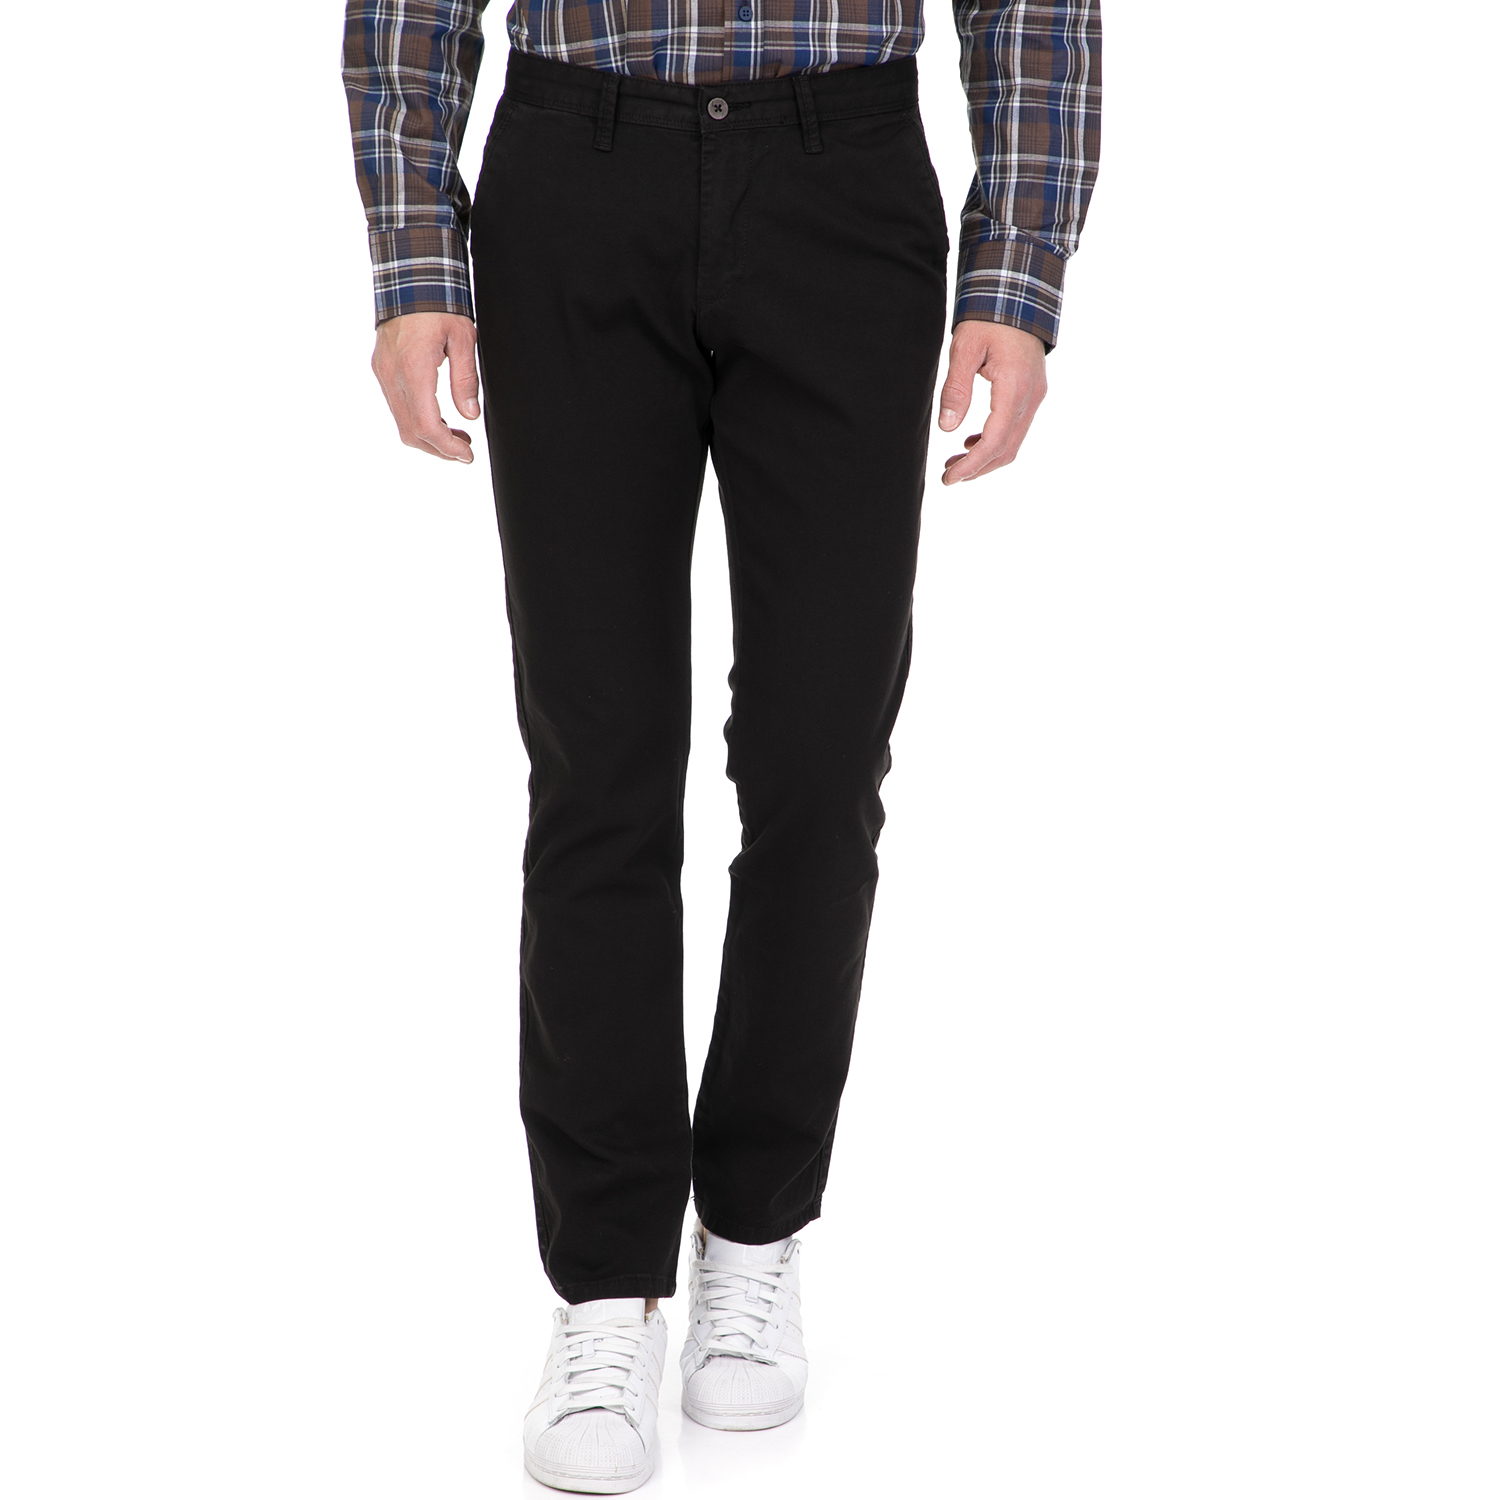 Ανδρικά/Ρούχα/Παντελόνια/Chinos DORS - Ανδρικό παντελόνι DORS μαύρο